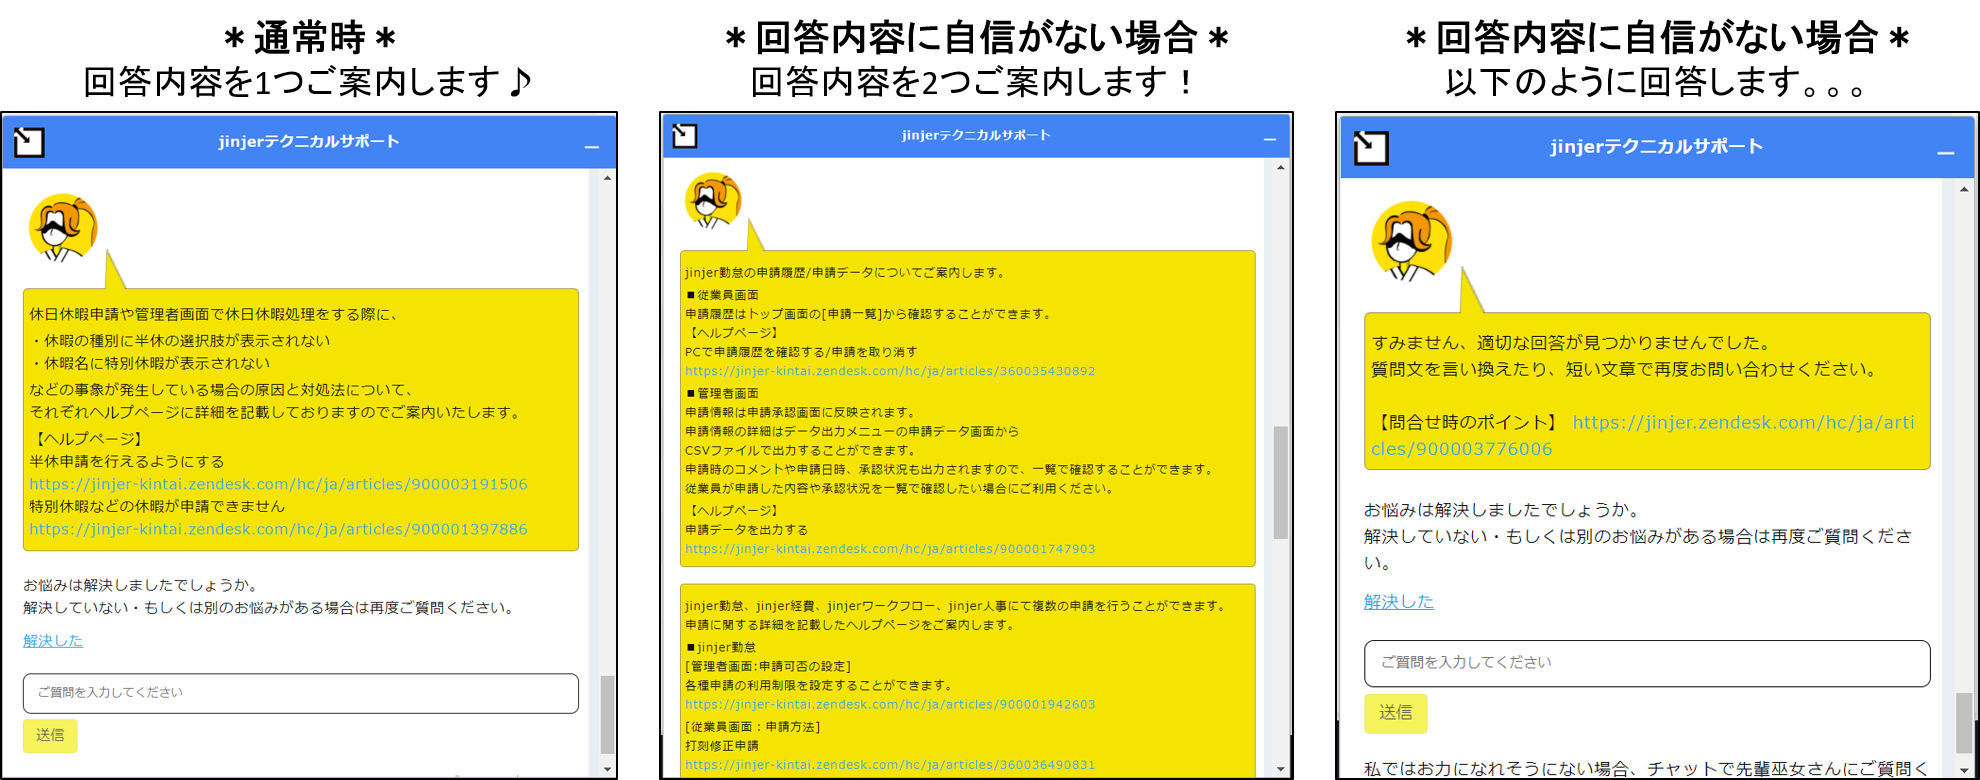 MIKO-SANへのお問い合わせ方法 – ジンジャートップ